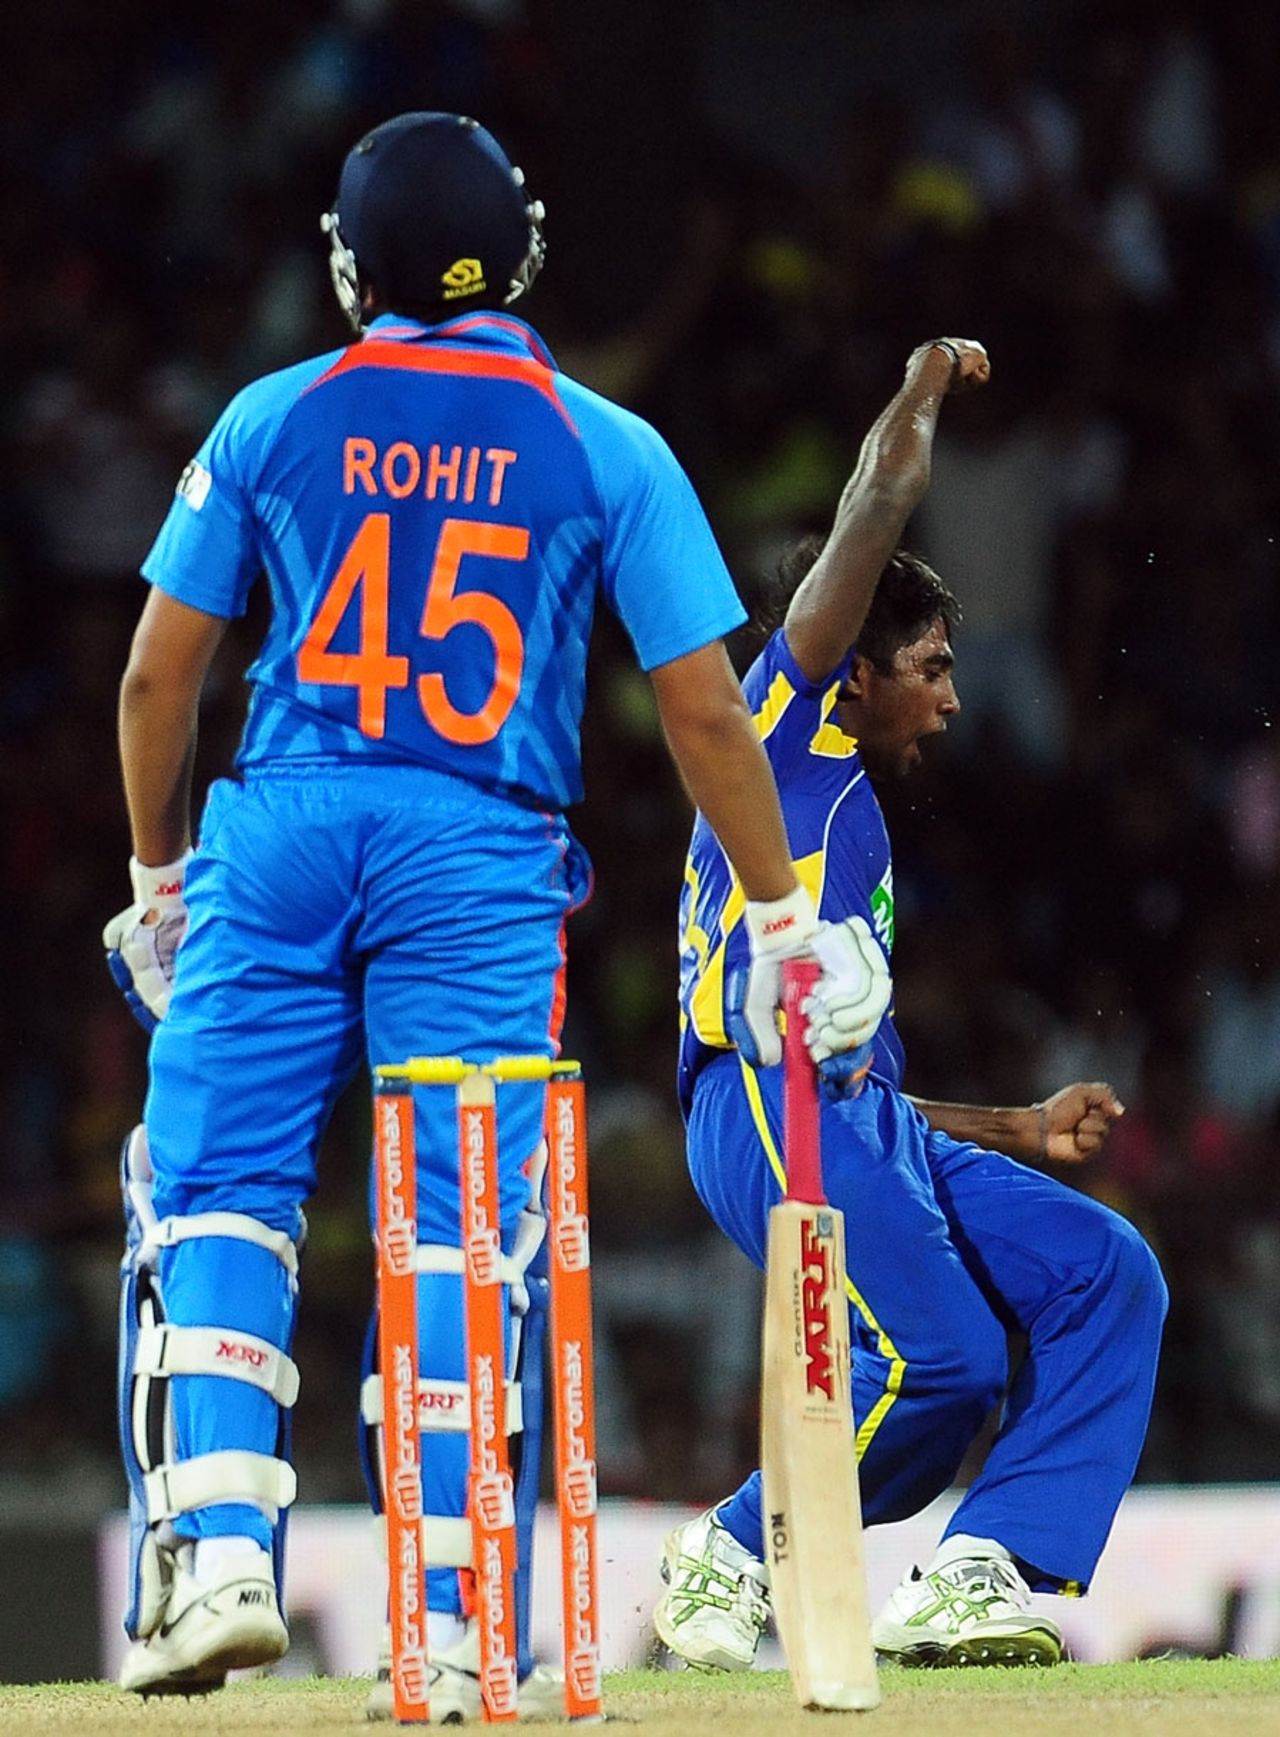 The out of form Rohit Sharma failed again, Sri Lanka v India, 4th ODI, Colombo, July 31, 2012